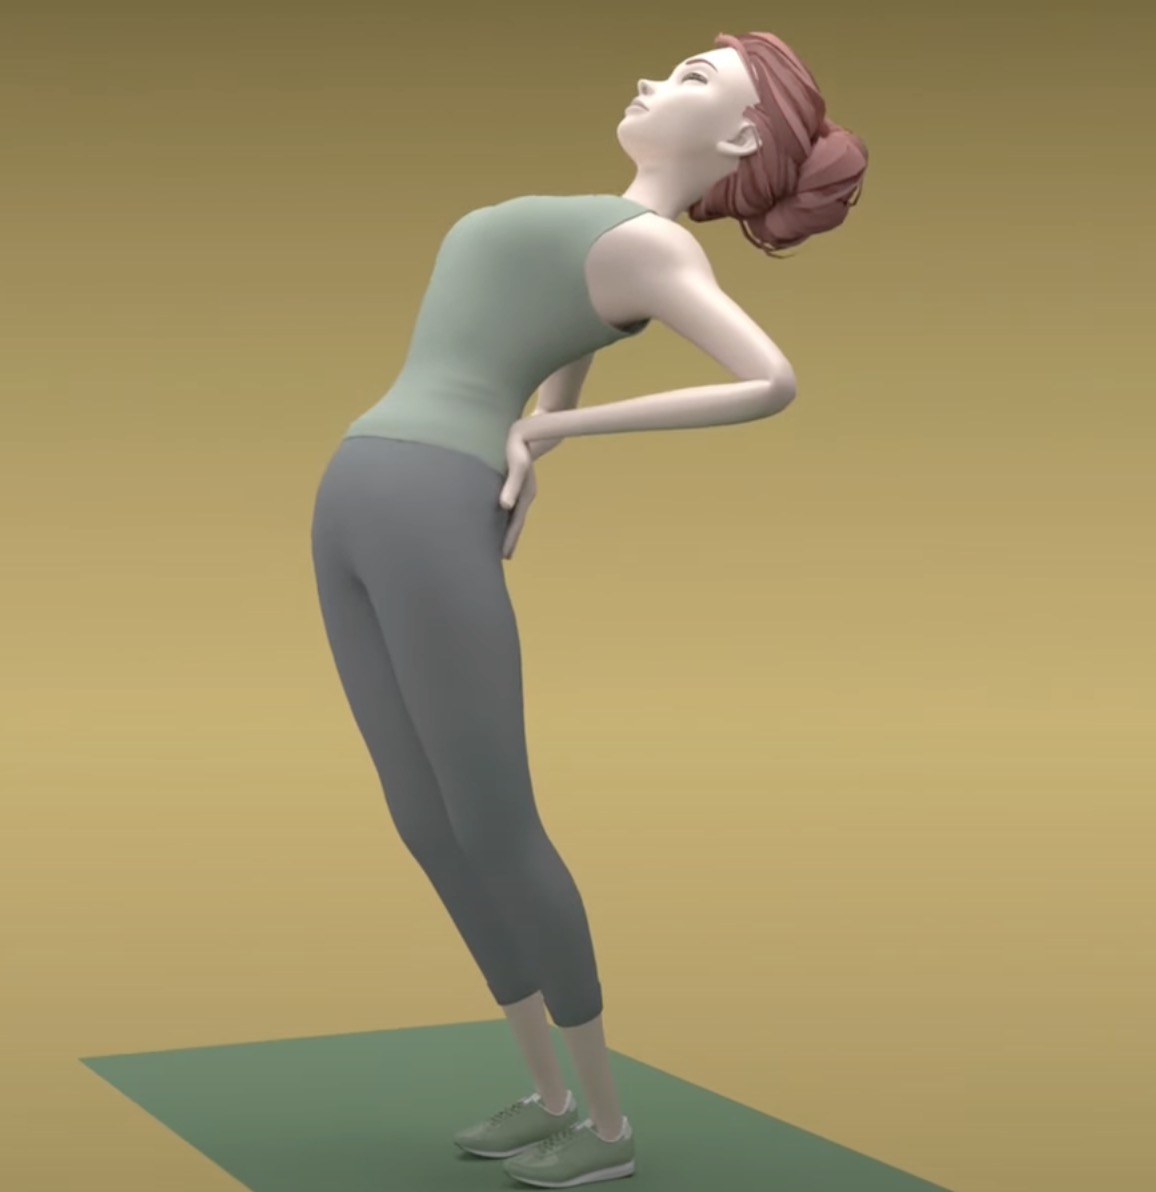 Le but de l'exercice Mckenzie debout est de garder le dos cambré pendant quelques secondes avant de reprendre une posture normale